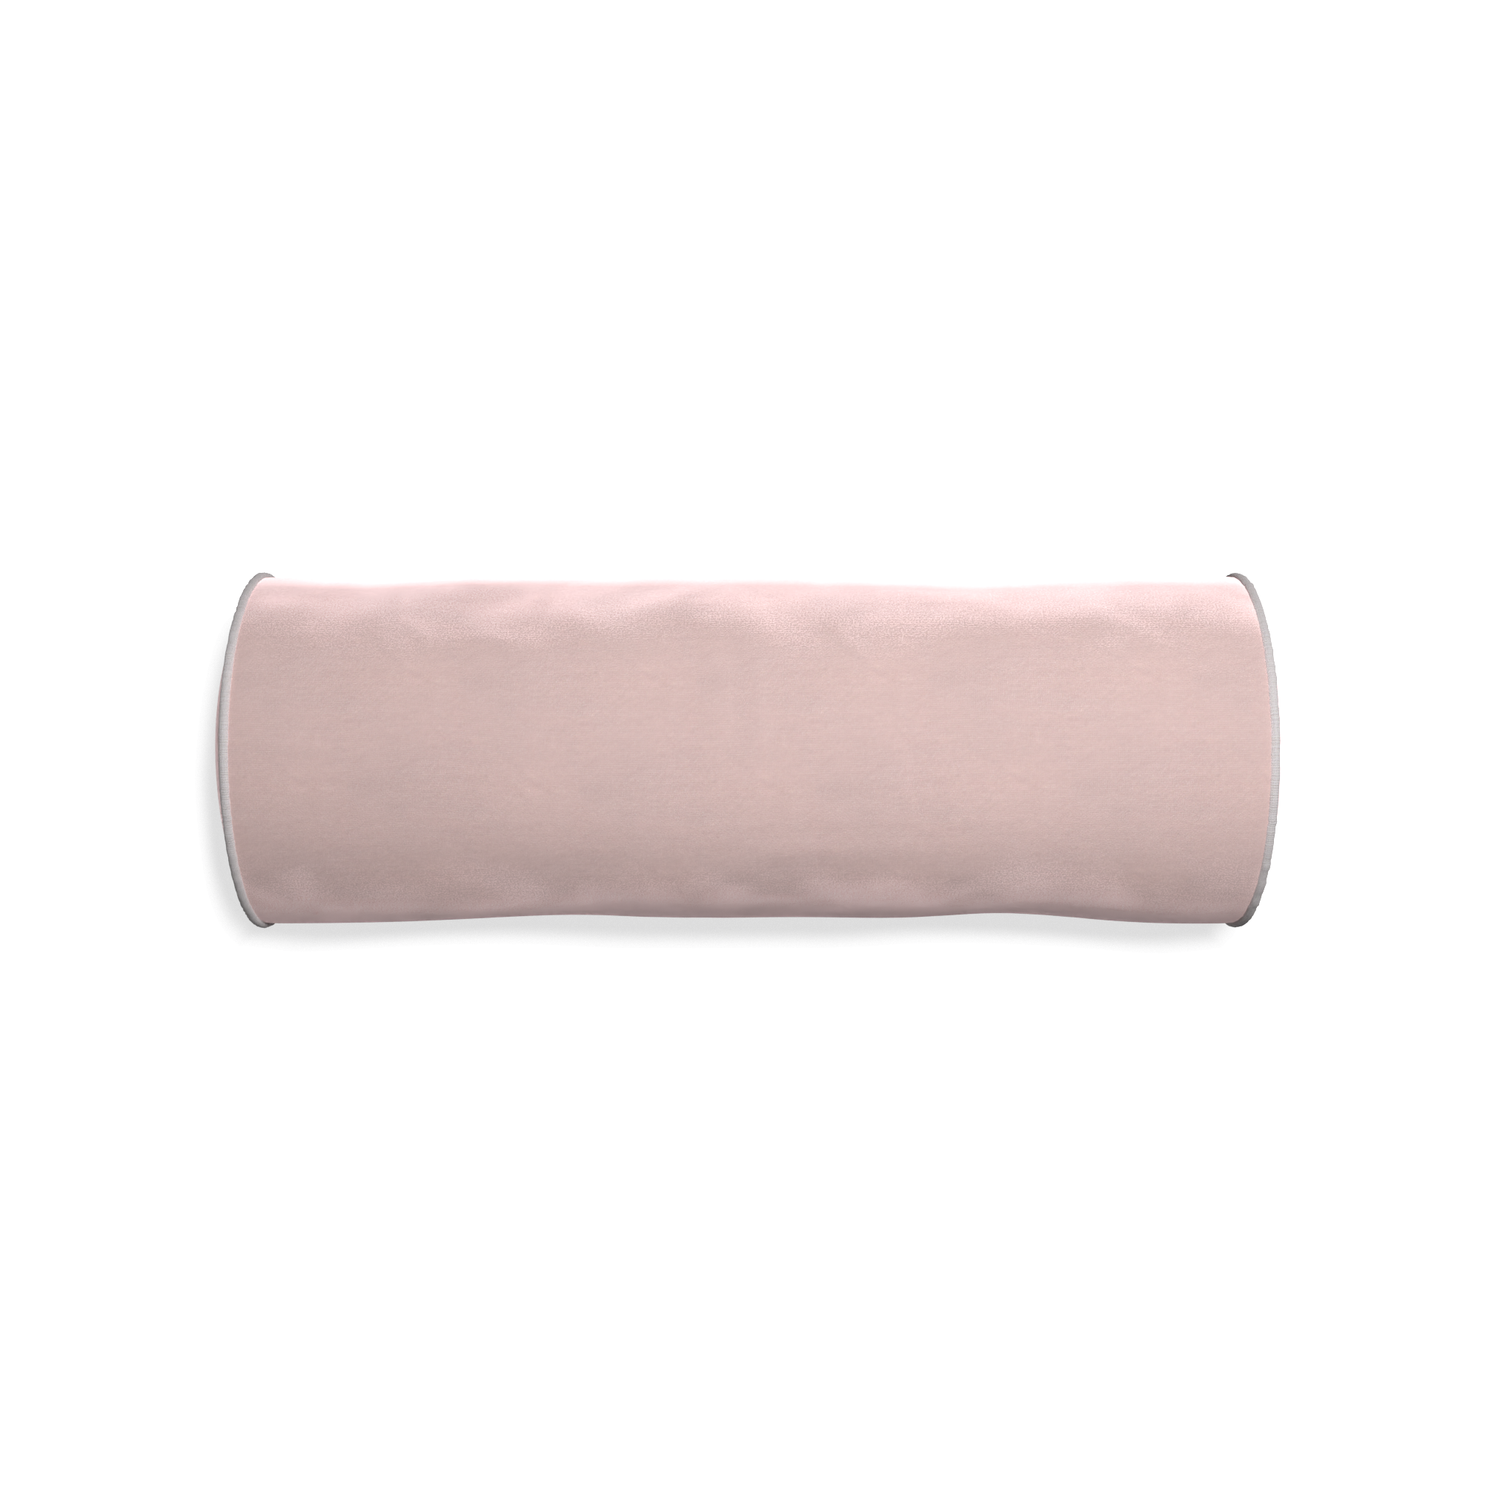 bolster light pink velvet pillow grey piping